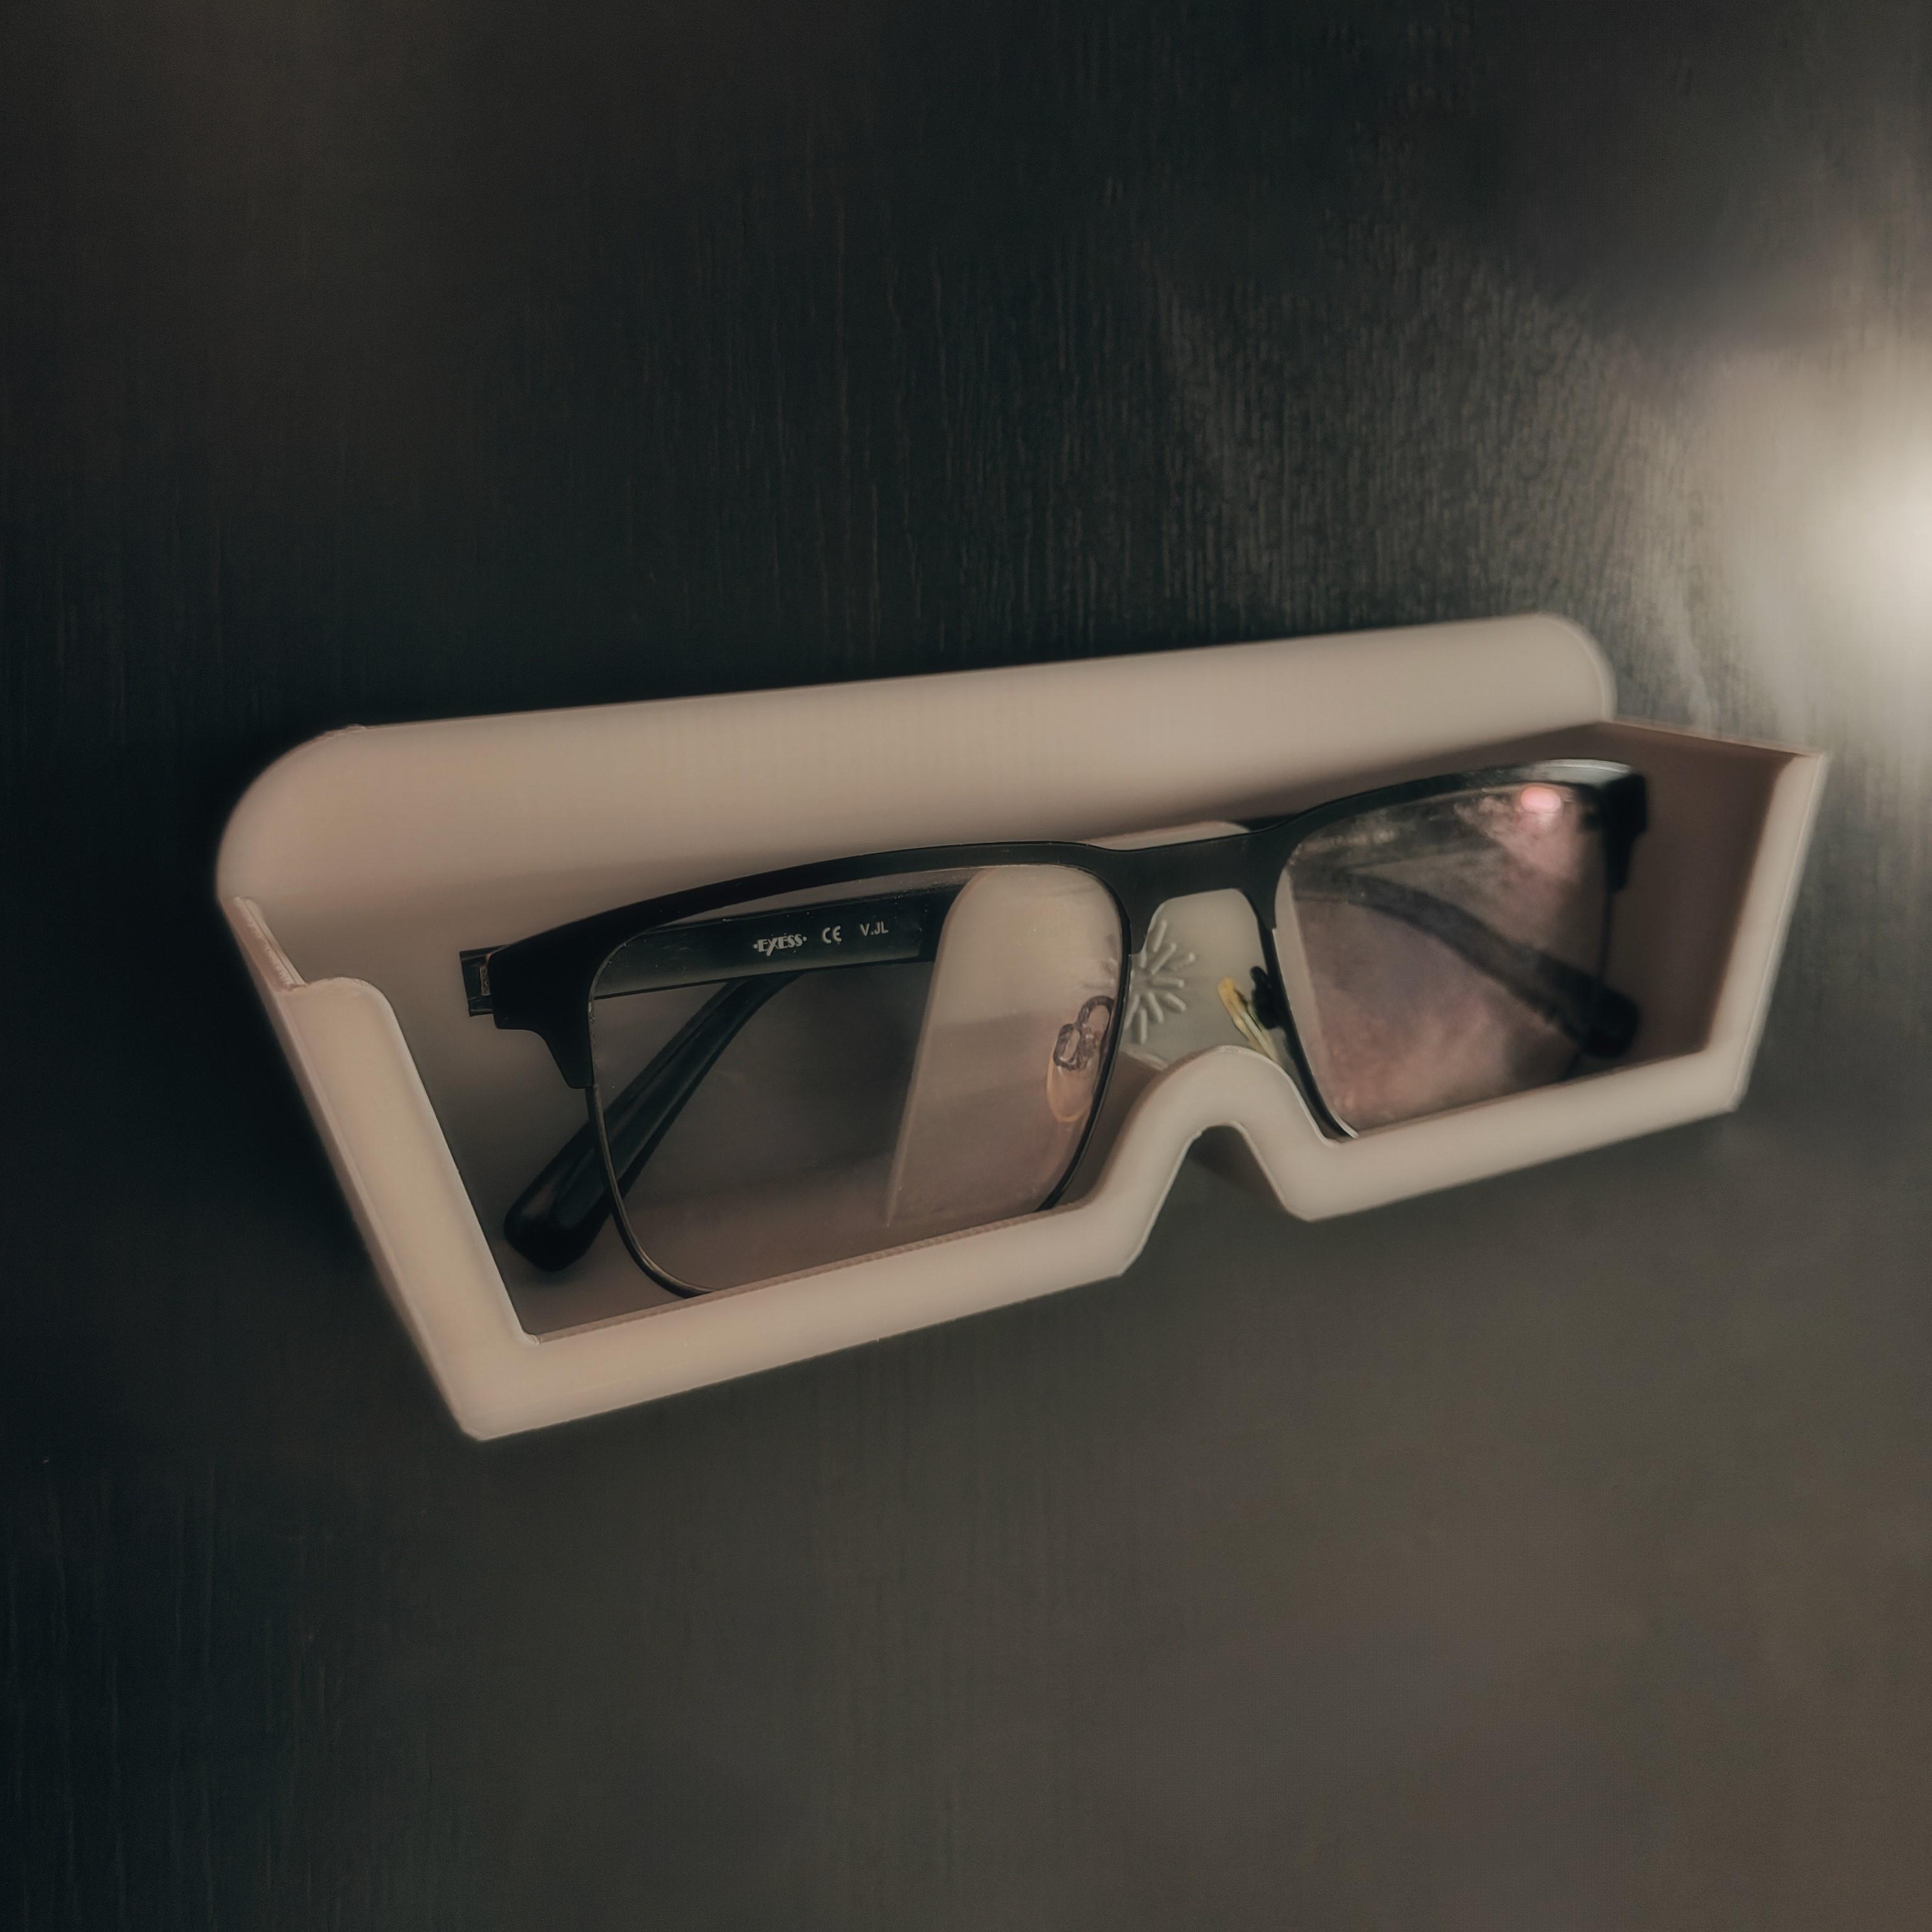 Glasses Shelf 3d model